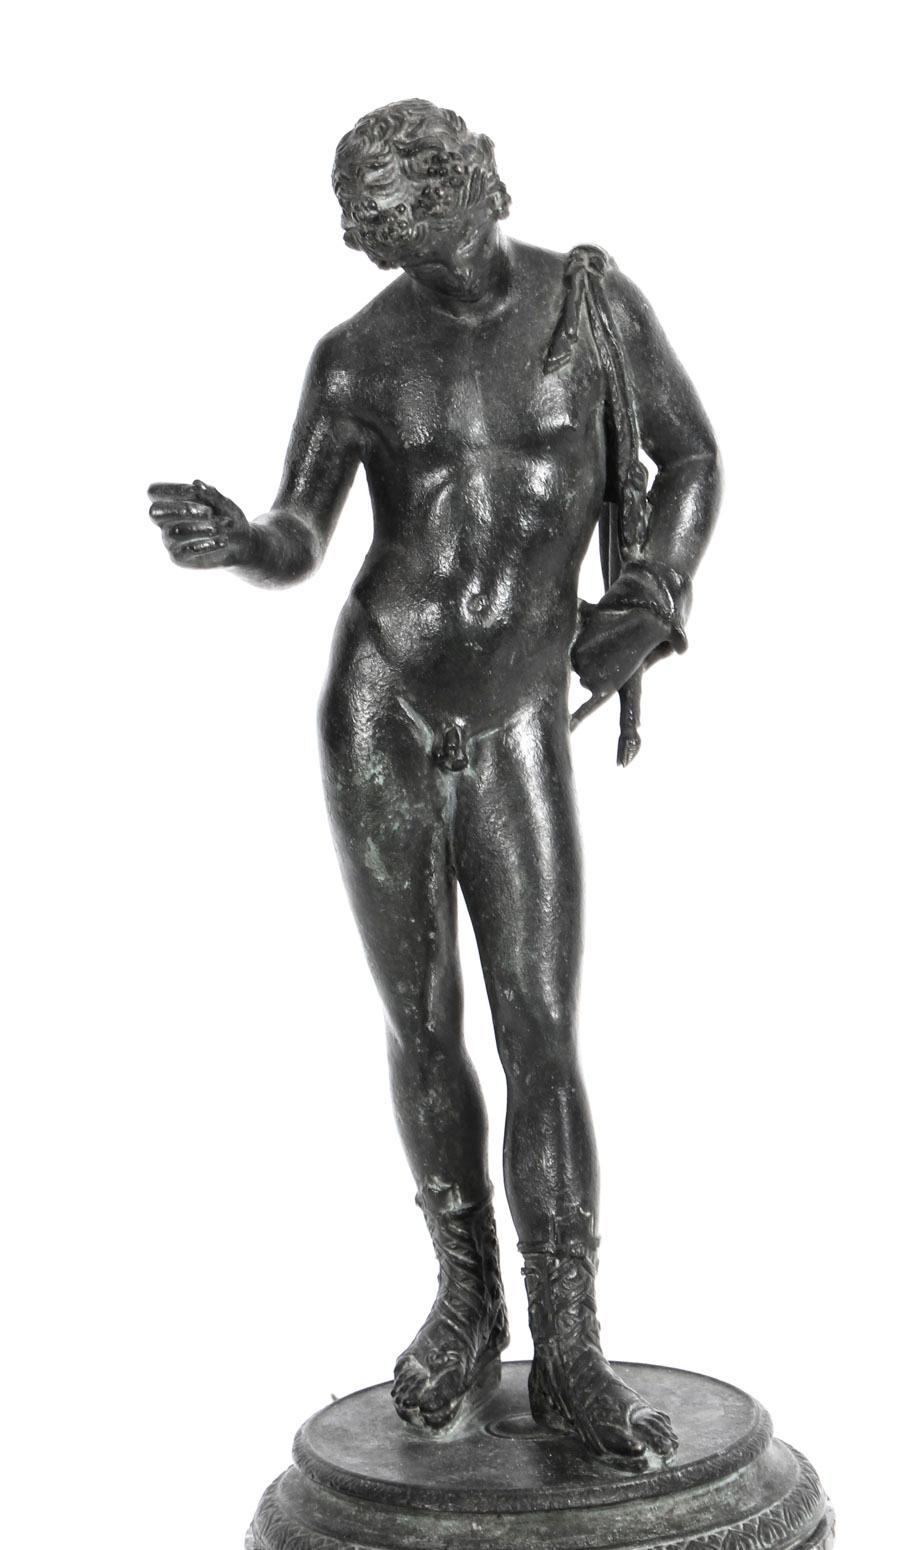 Dies ist eine hervorragende antike Grand Tour patinierte Bronzefigur von Narziss, aus dem letzten Viertel des 19. Jahrhunderts.

Narziss war in der griechischen Mythologie ein Jäger und zeichnete sich durch seine Schönheit aus.
 
Diese